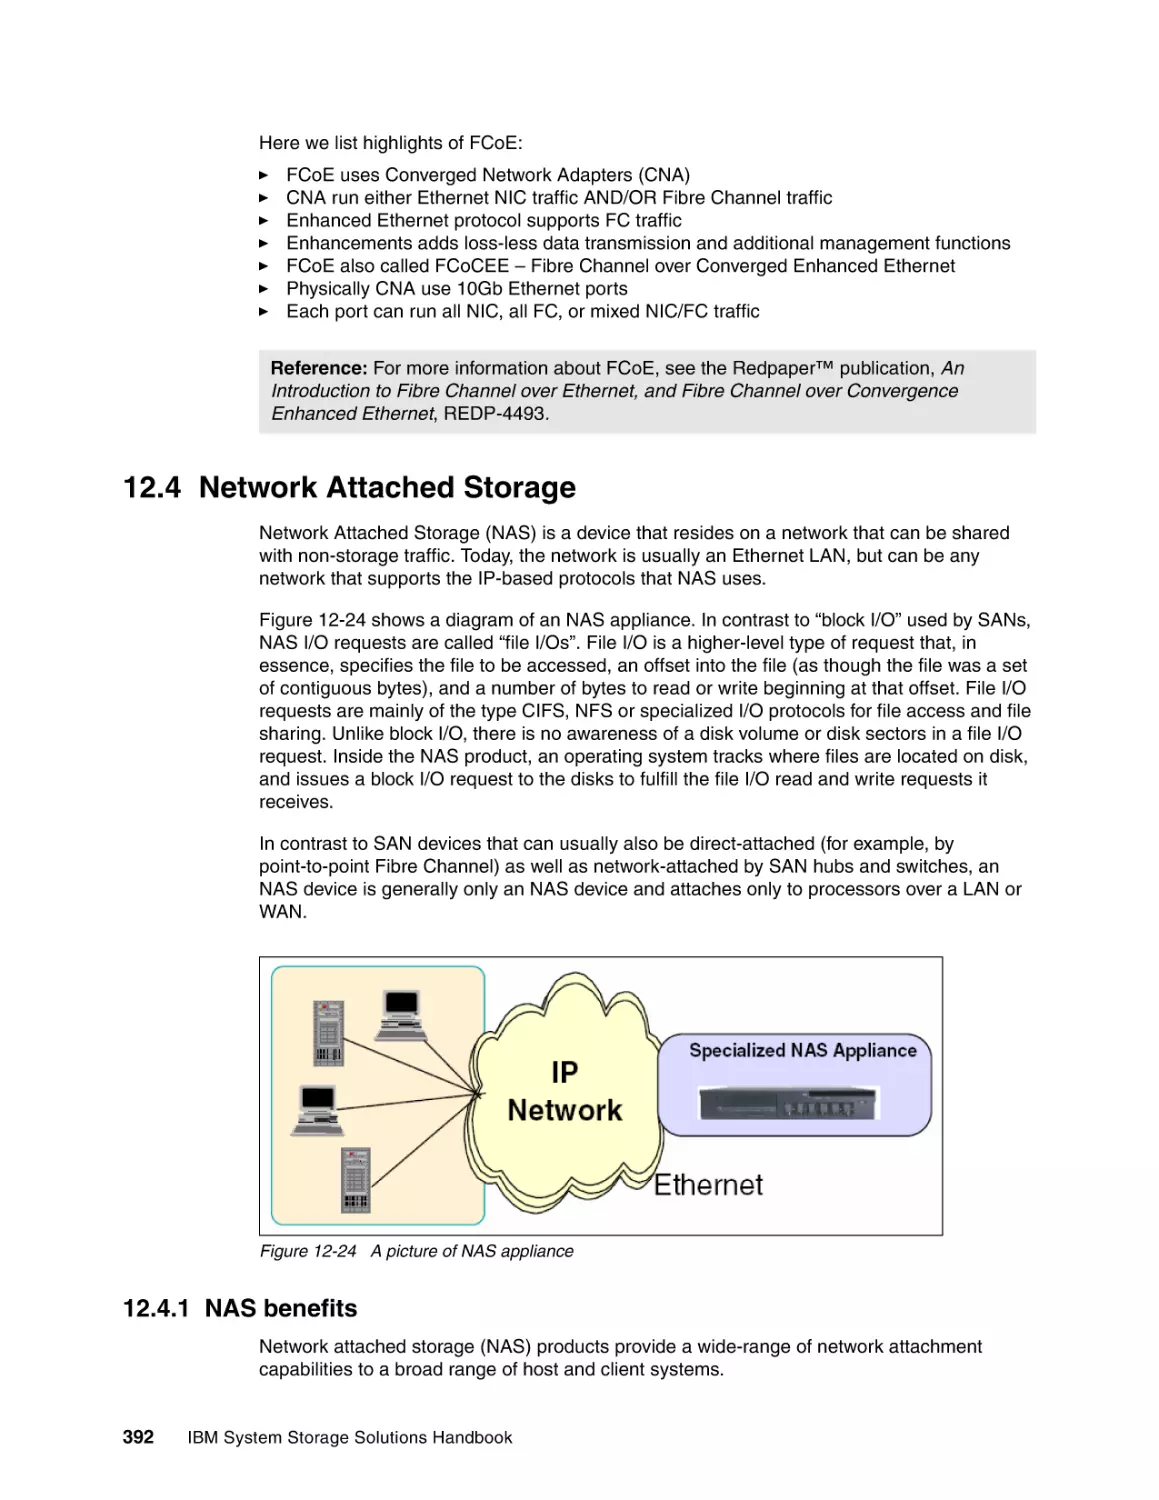 12.4 Network Attached Storage
12.4.1 NAS benefits